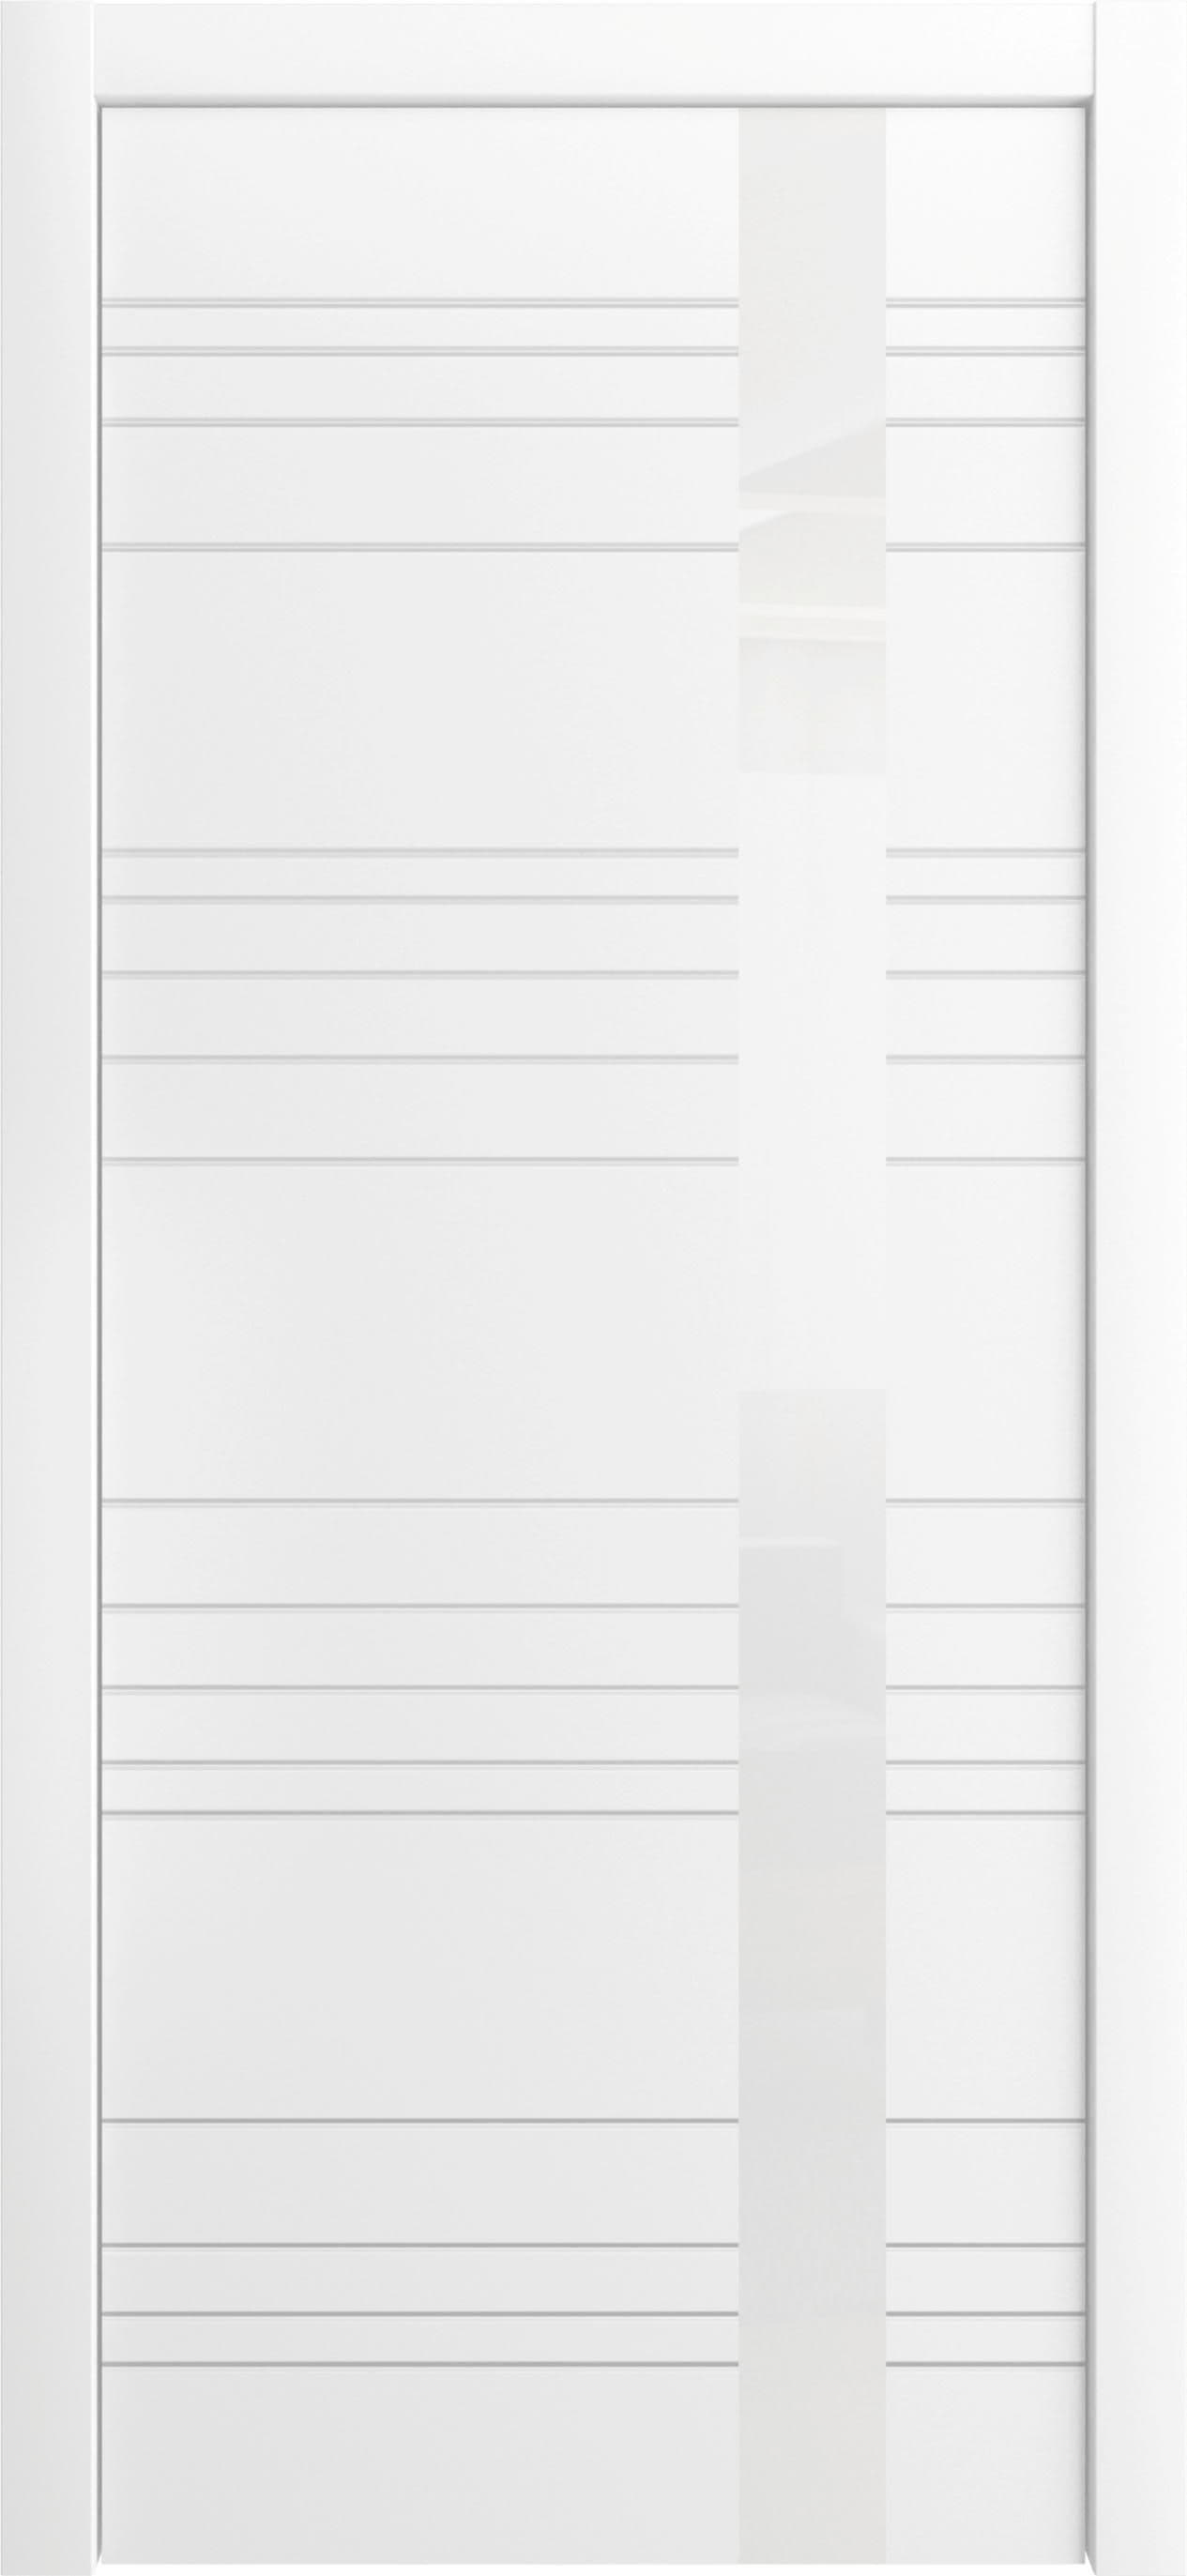 Межкомнатная дверь «Корсо» Лайн-Дор. Вид отделки Белая эмаль Остекление:  Cтандартный наличник